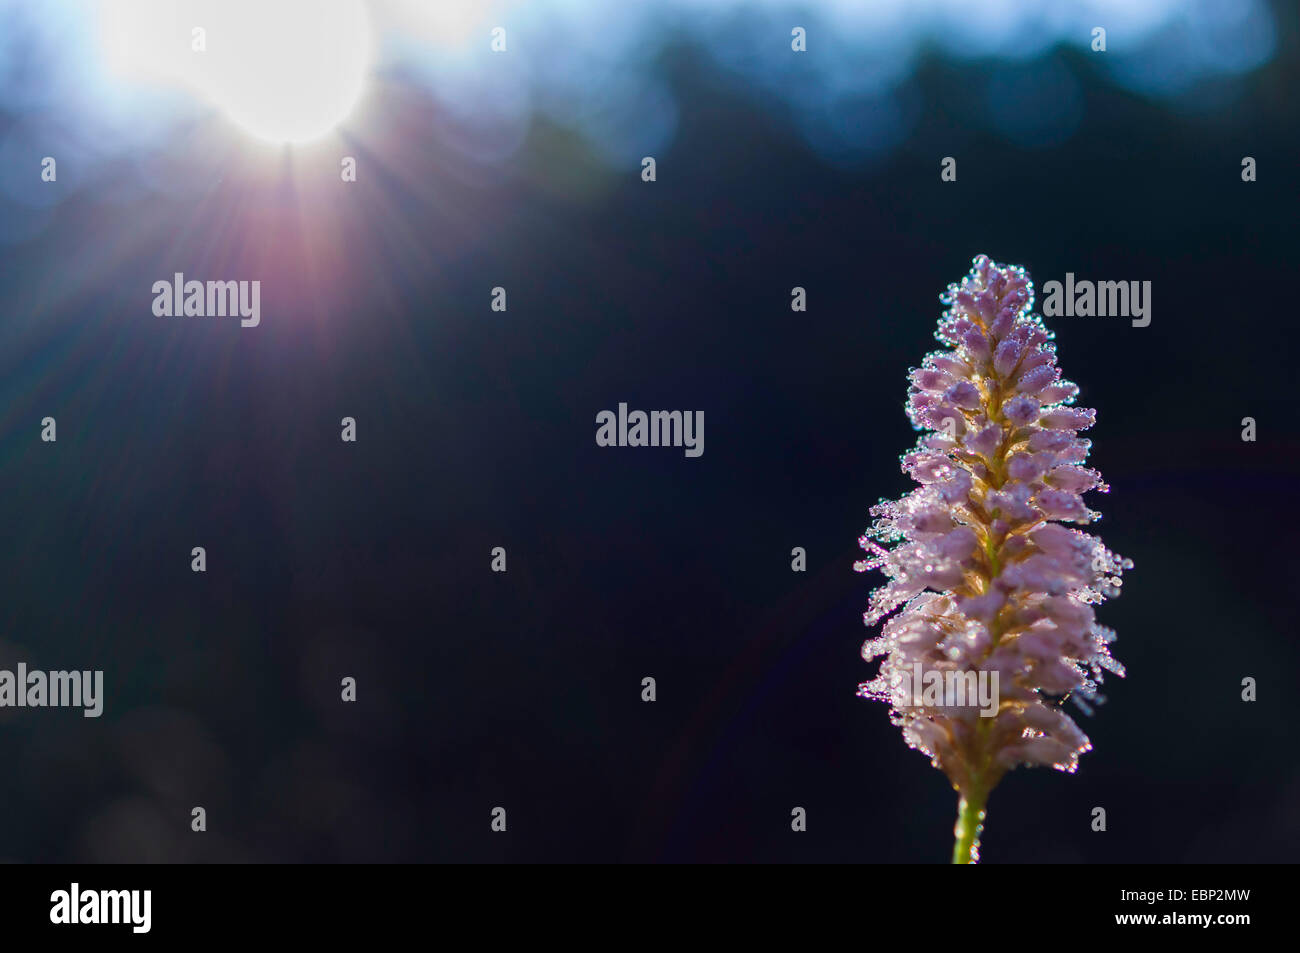 Common bistort, Meadow bistort (Polygonum bistorta, Bistorta officinalis, Bistorta major, Persicaria bistorta), inflorescence in backlight, Germany, Saxony Stock Photo